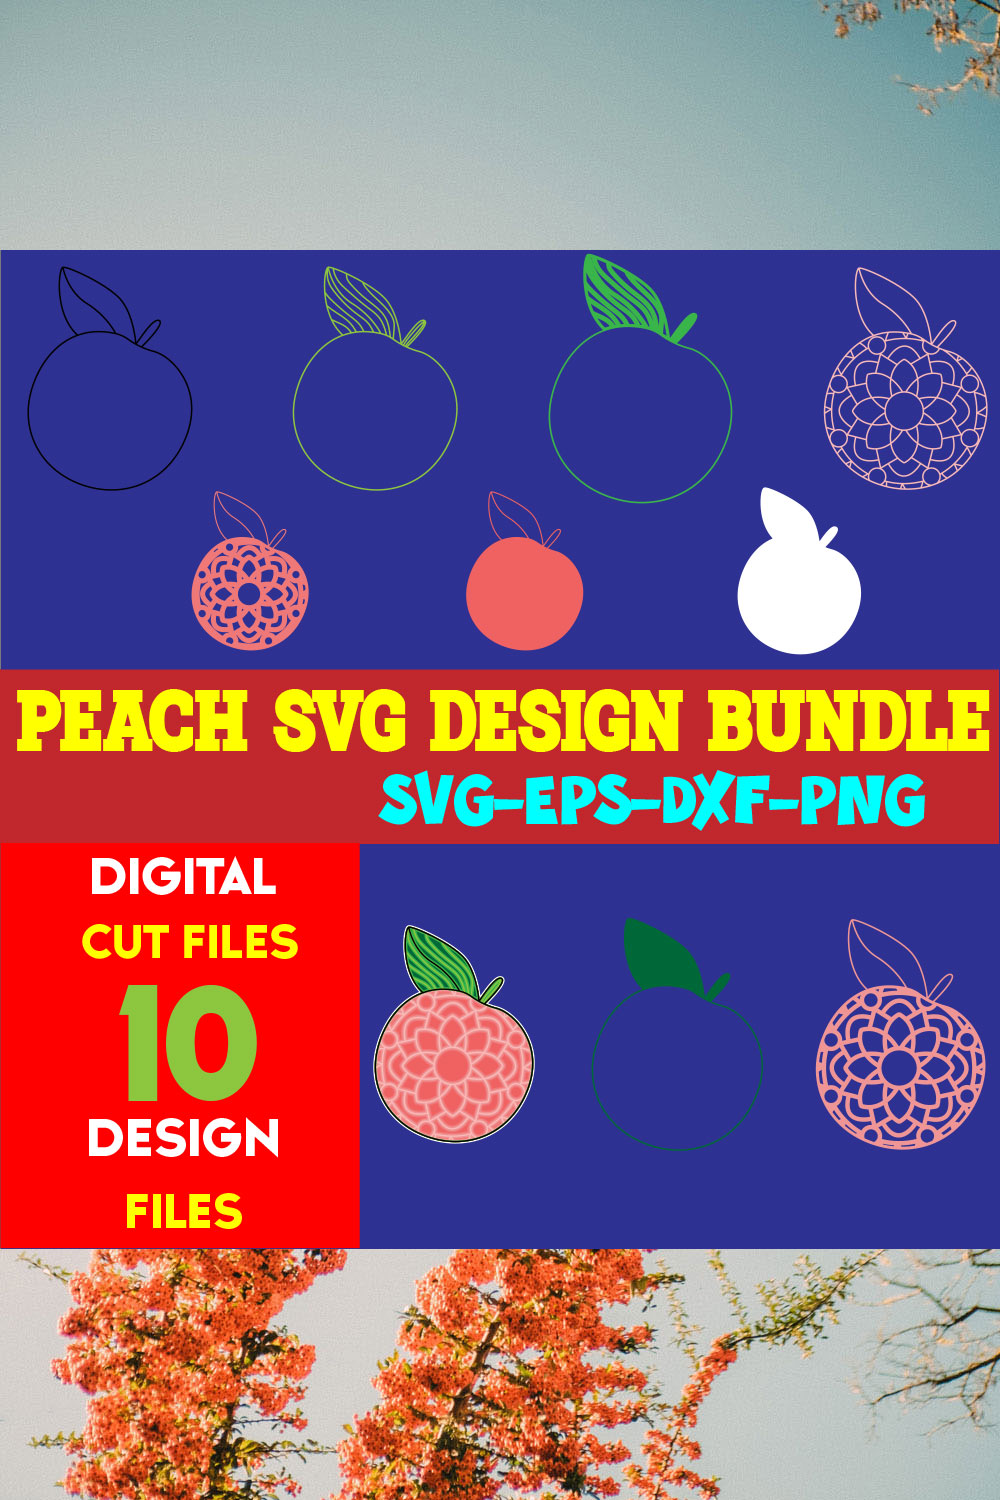 Peach SVG Design Bundle pinterest preview image.